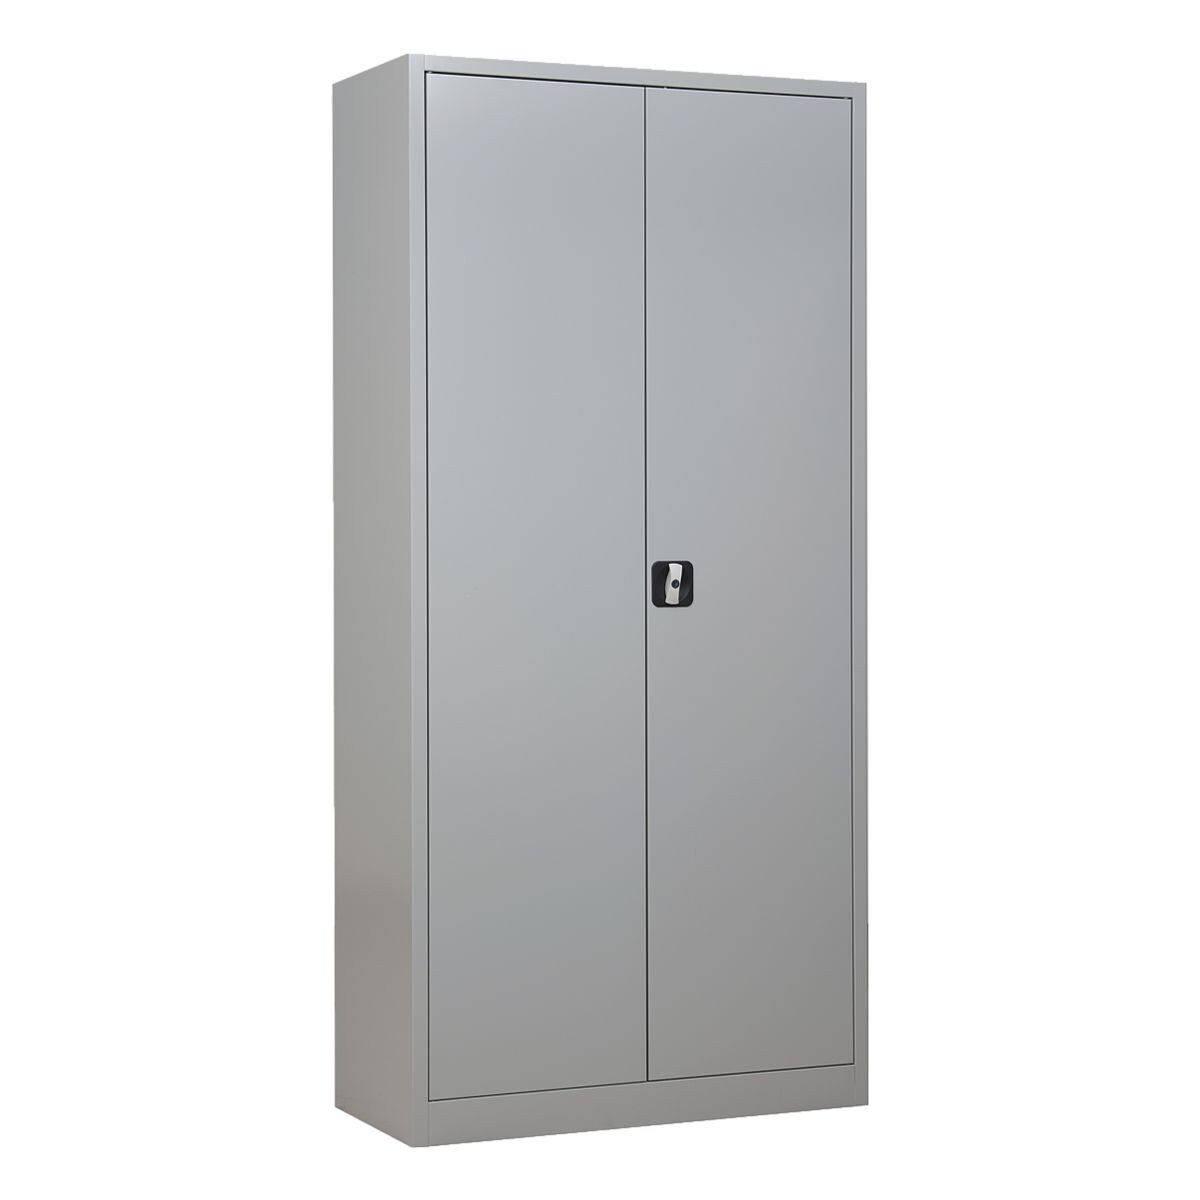 GUERKAN Aktenschrank 4,5 OH, Schrank aus Stahl, verstärkte Türen, 92x195 cm grau | Aktenschränke